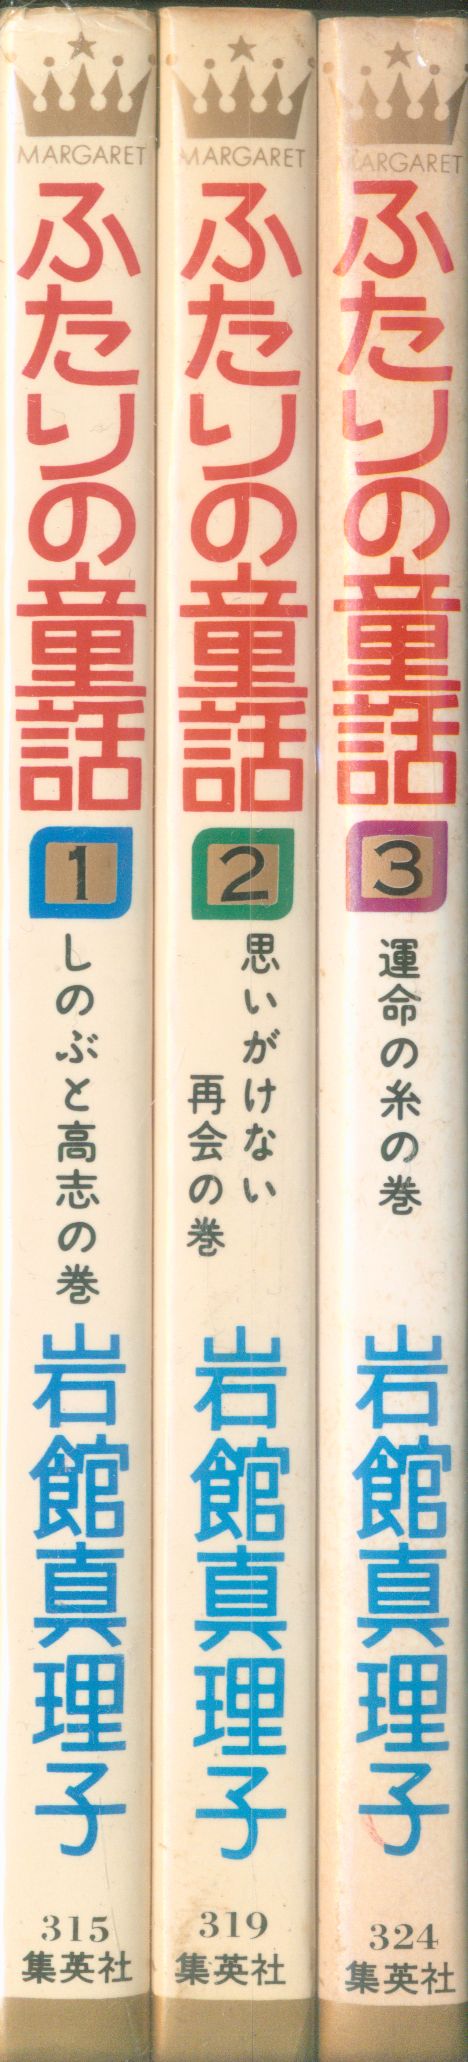 集英社 マーガレットコミックス 岩館真理子 ふたりの童話 全3巻 セット まんだらけ Mandarake